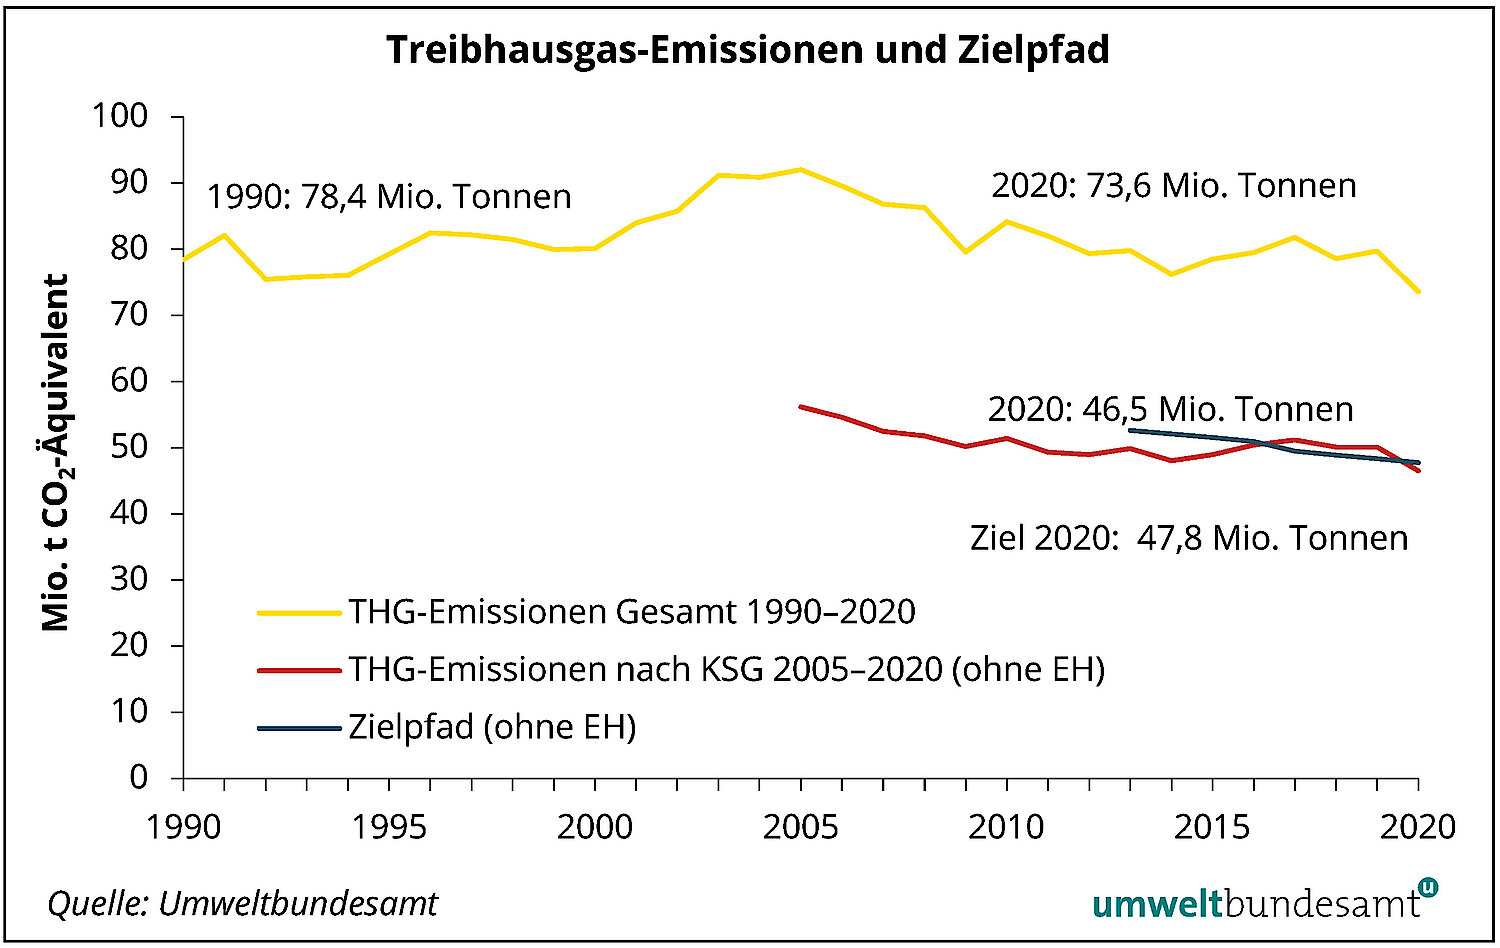 Die gesamten THG Emissionen liegen mehr als 20 Millionen Tonnen über dem Zielwert. Ohne Emissionshandel wurde der Zielwert 2020 jedoch sogar unterschritten.